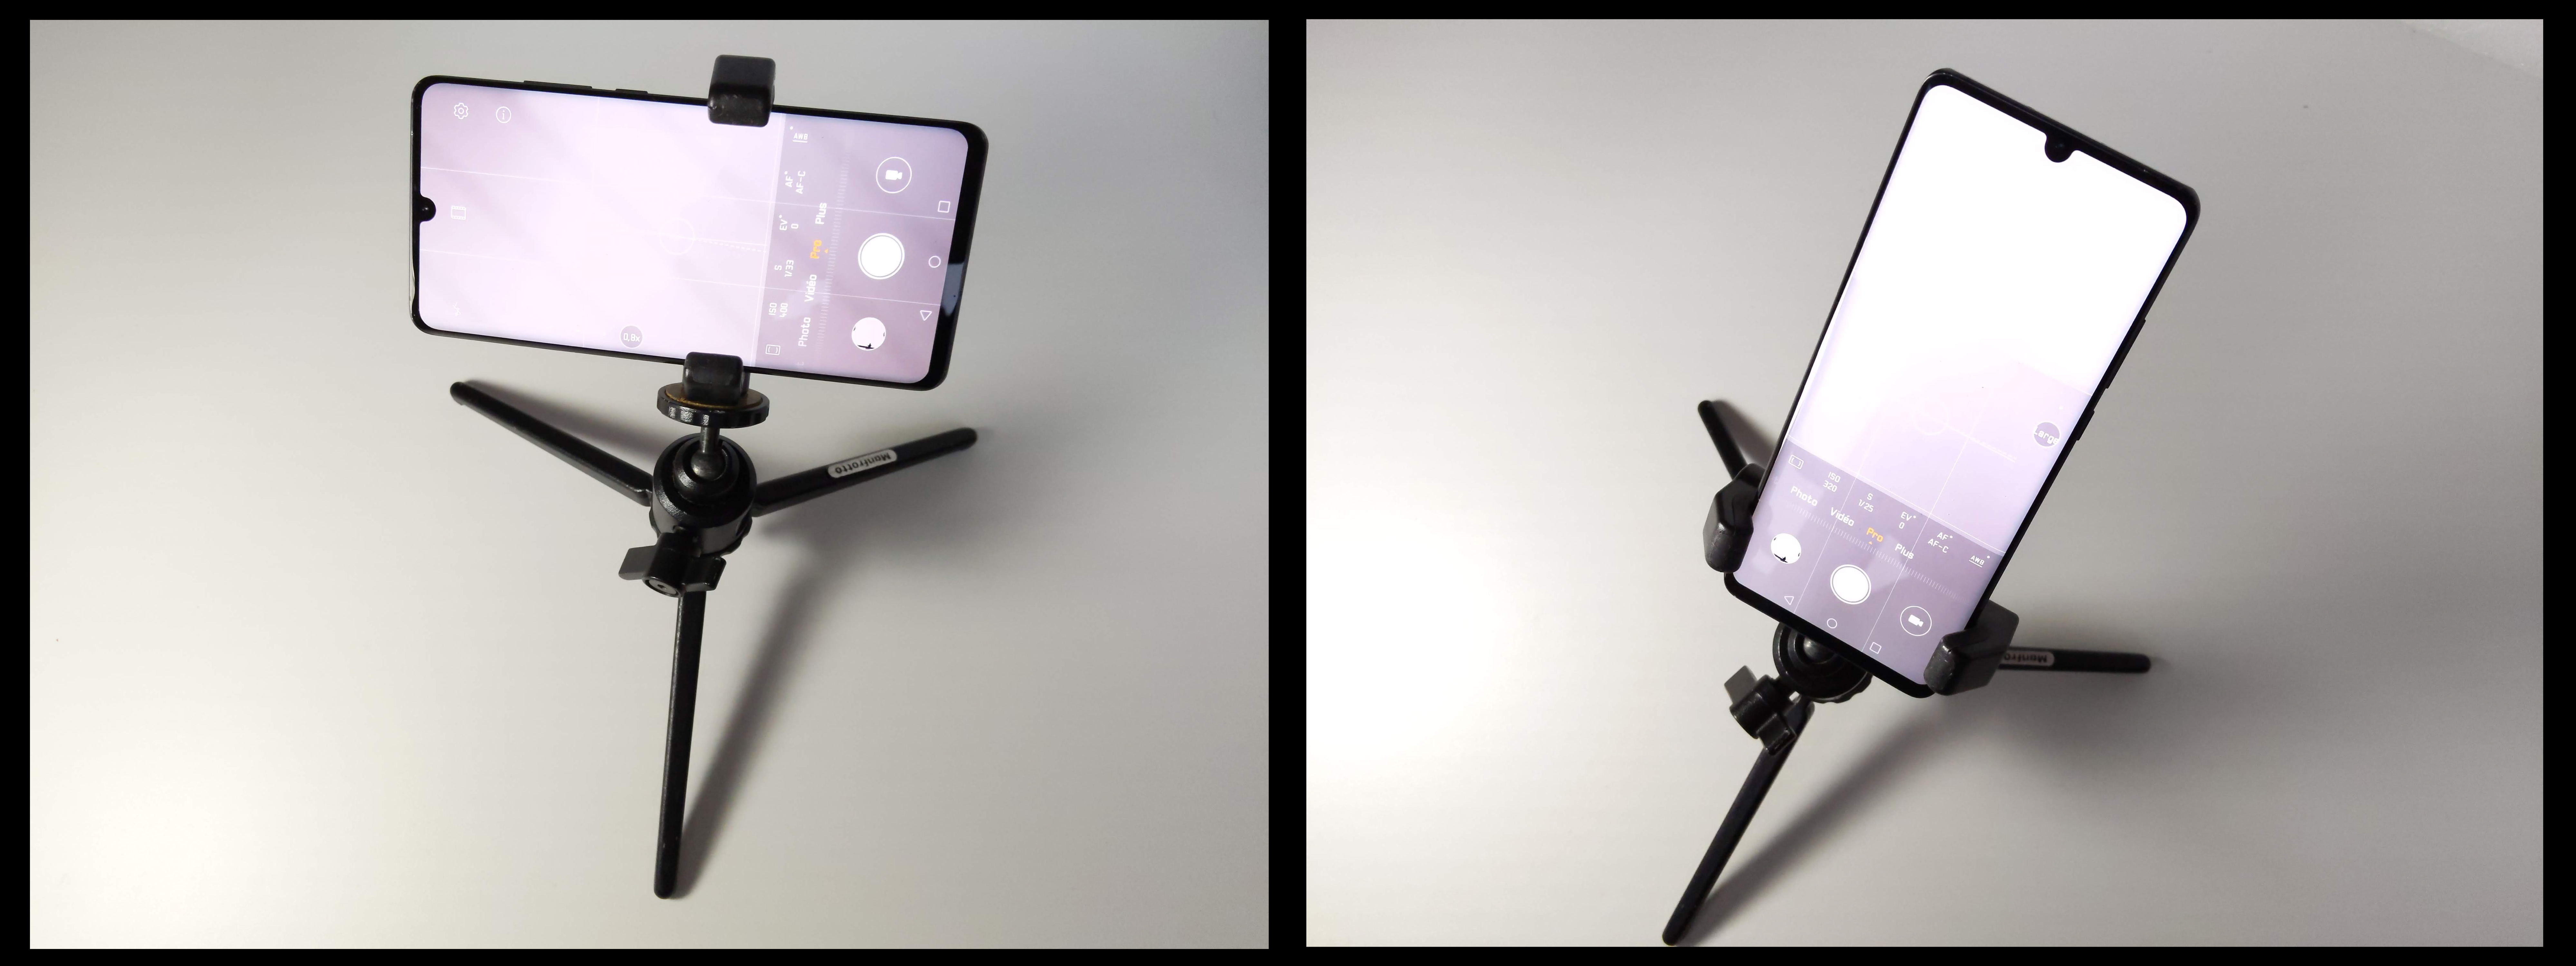 Grip Studio Neat Glif pour smartphone en position paysage et portrait, 2019, Ph. Moctar KANE.